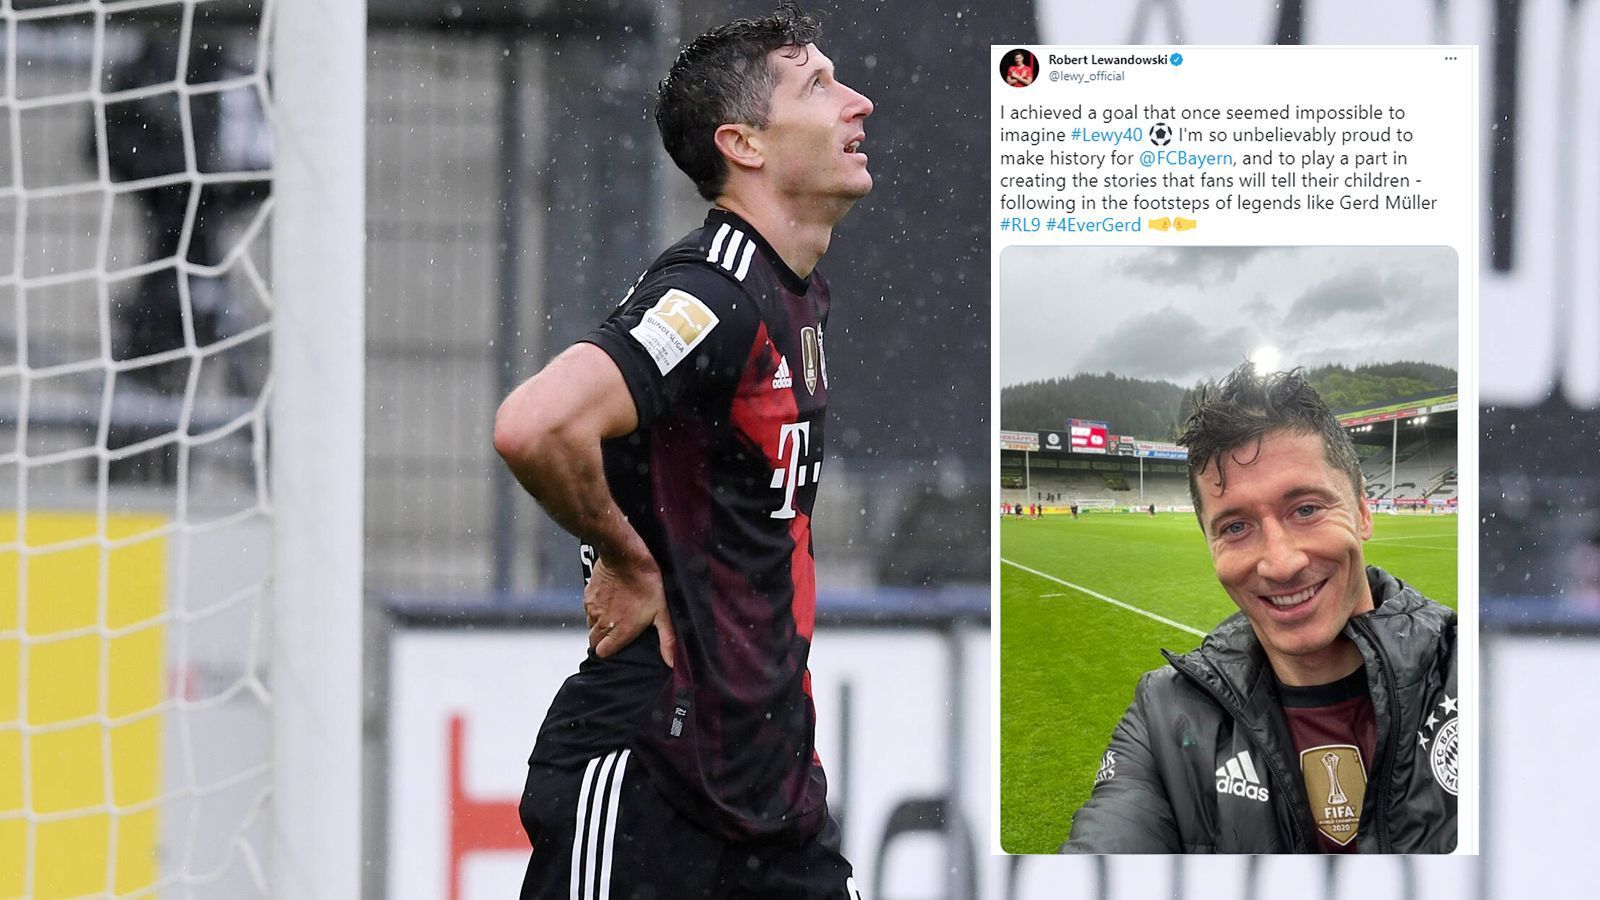 
                <strong>So feiert Bayern-Star Robert Lewandowski seine 40-Tore-Marke</strong><br>
                Nach dem Spiel meldete sich Lewandowski in den sozialen Medien zu Wort. "Ich erreichte ein Ziel, das einstmals unerreichbar erschien #Lewy40. Ich bin so unglaublich stolz, Geschichte geschrieben zu haben für den FC Bayern und einen Teil zu einer Geschichte beigetragen zu haben, den Fans ihren Kindern erzählen werden – ich folge in den Fußstapfen von Legenden wie Gerd Müller", schrieb Lewandowski auf Twitter nach seinem 40. Saisontor. 
              